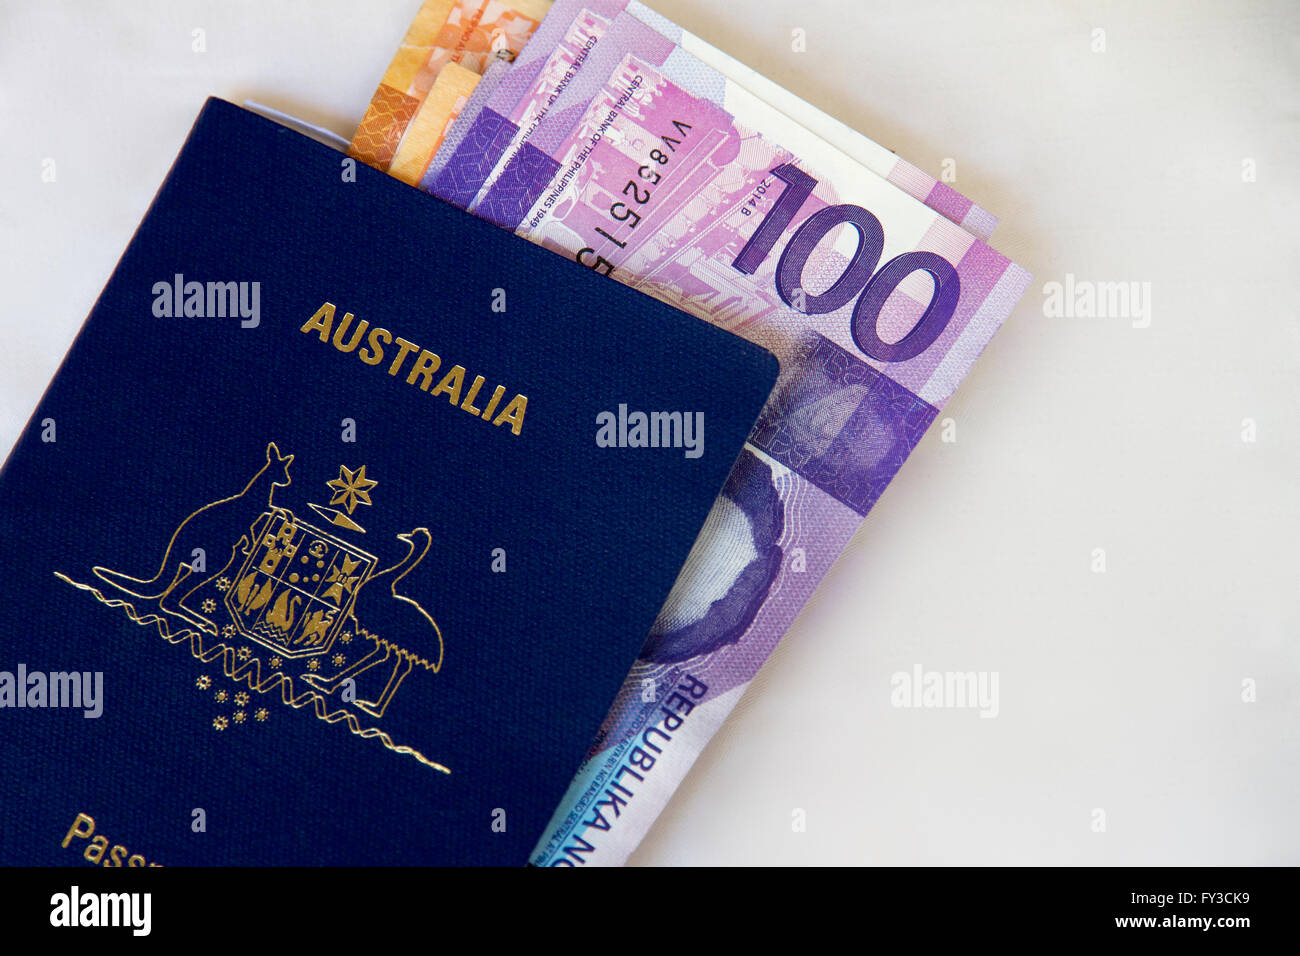 Australian passport and Phillipino cash to travel Stock Photo -